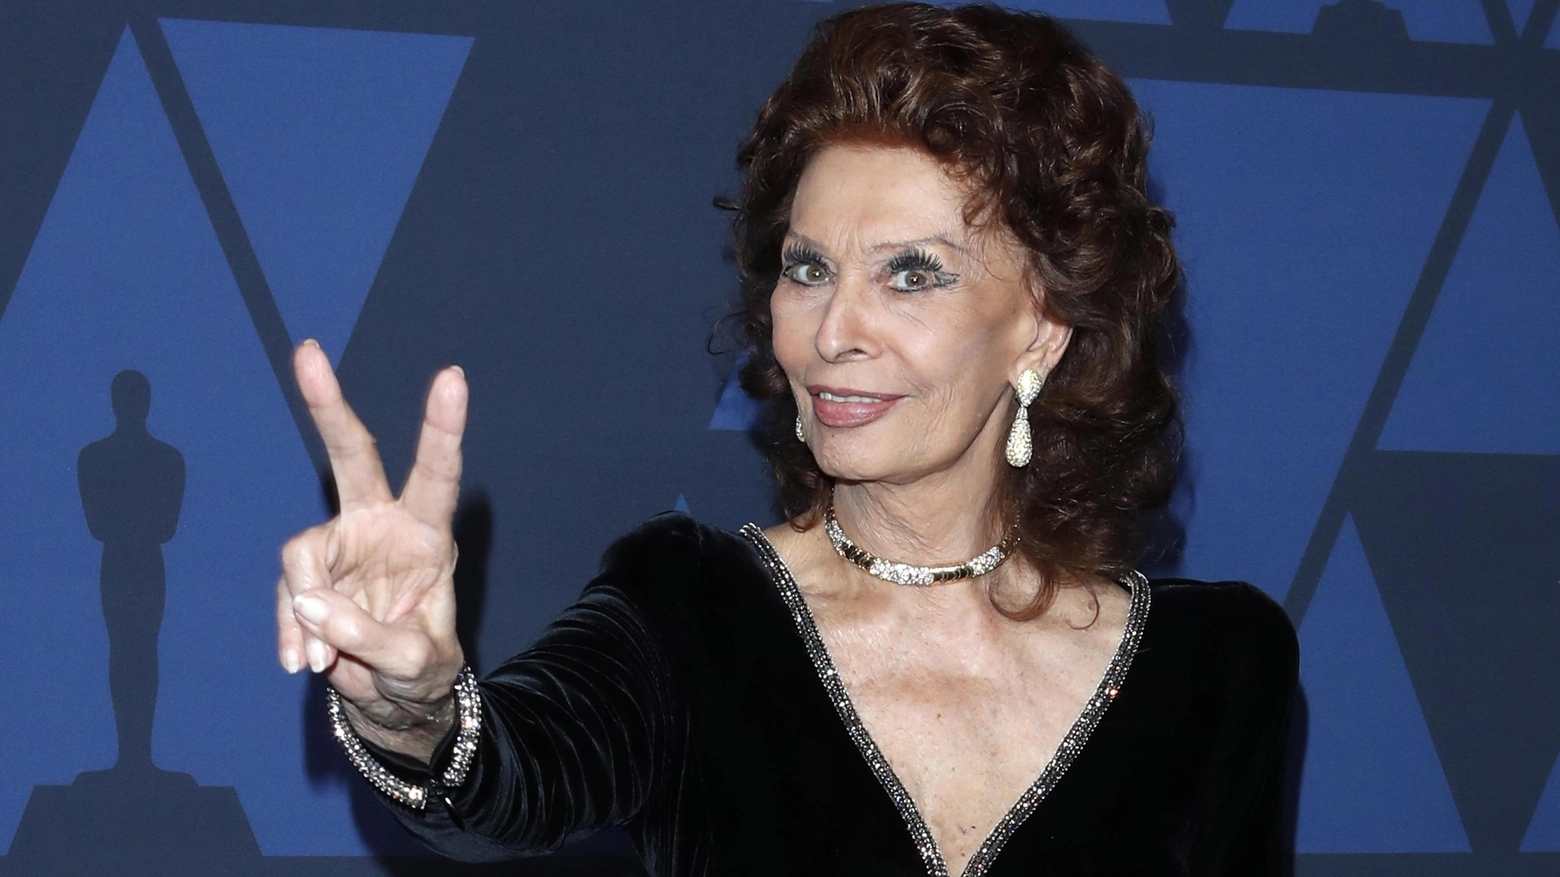 La celebre attrice italiana Sofia Loren